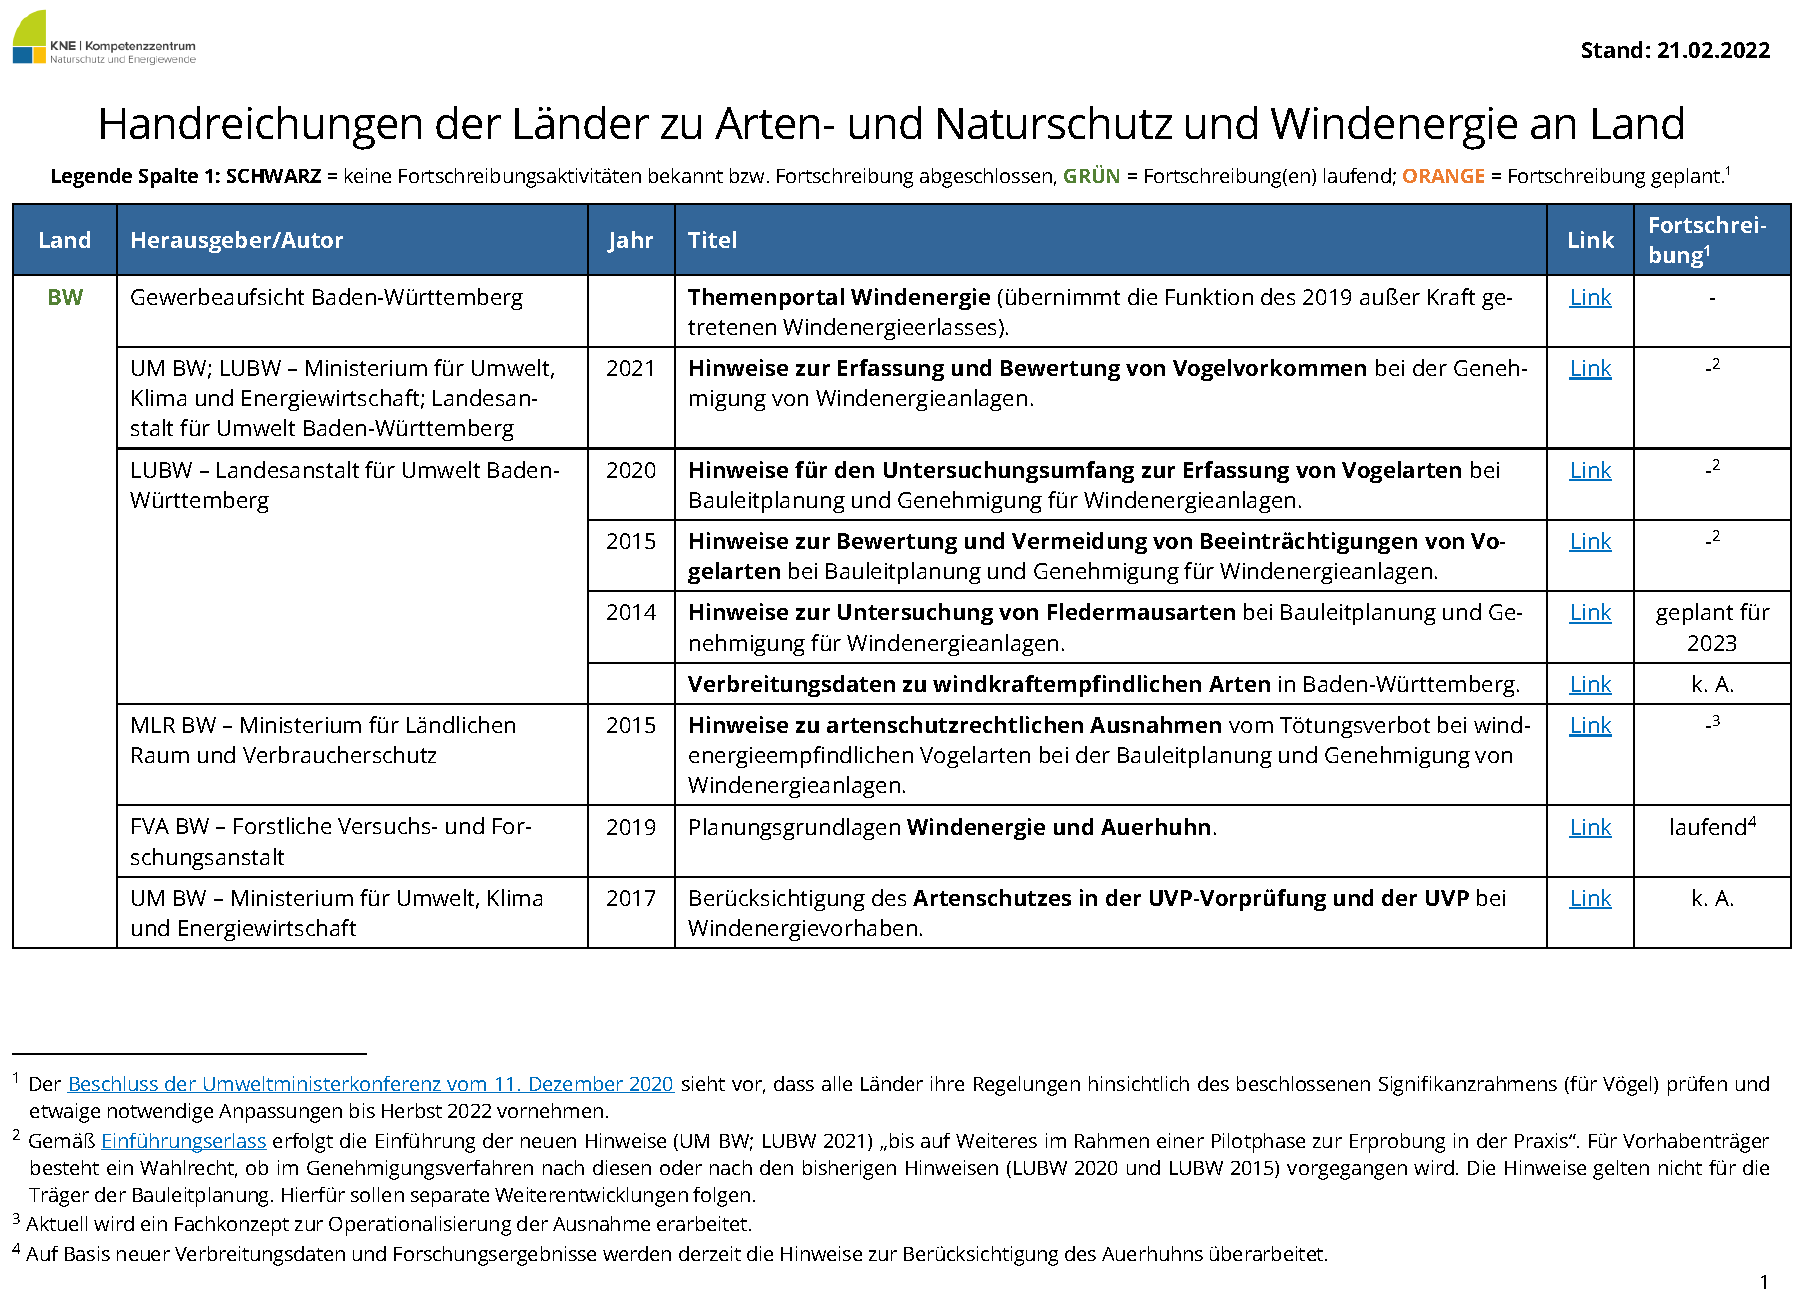 KNE-Uebersicht_Artenschutz-Leitfaeden_Windenergie_Laender-1